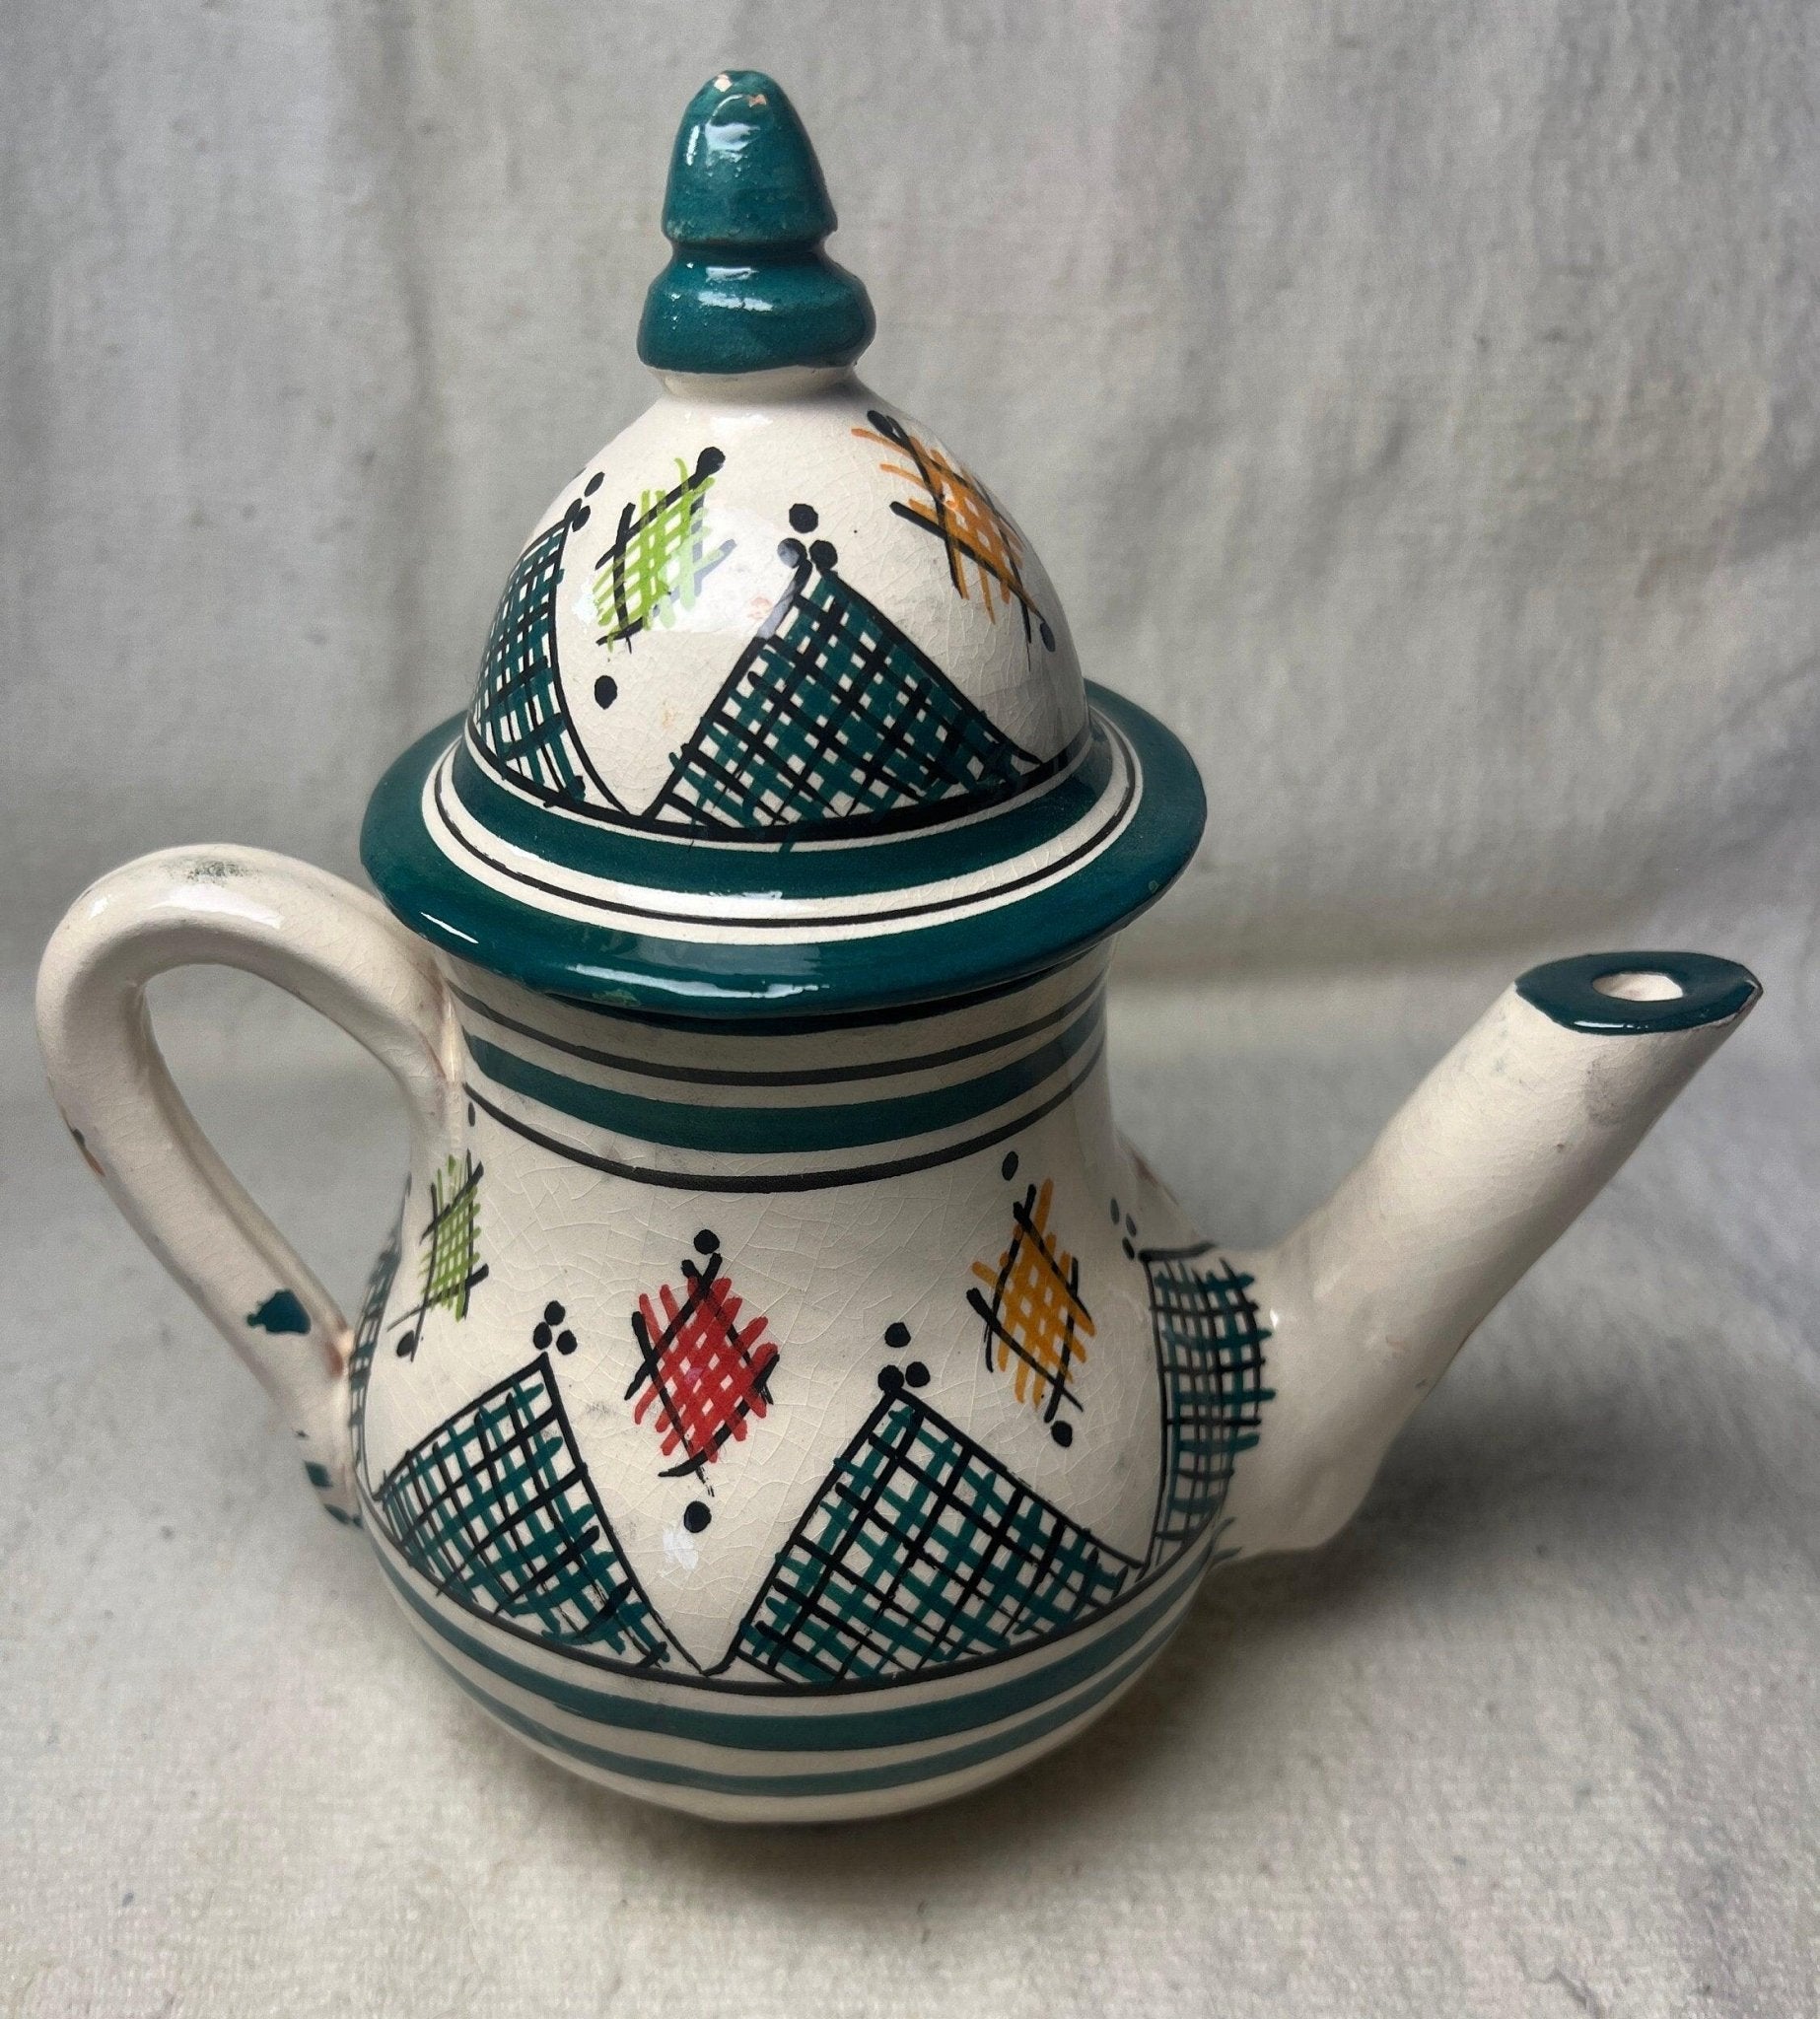 painted ceramic teapot set complete - Amazighrose